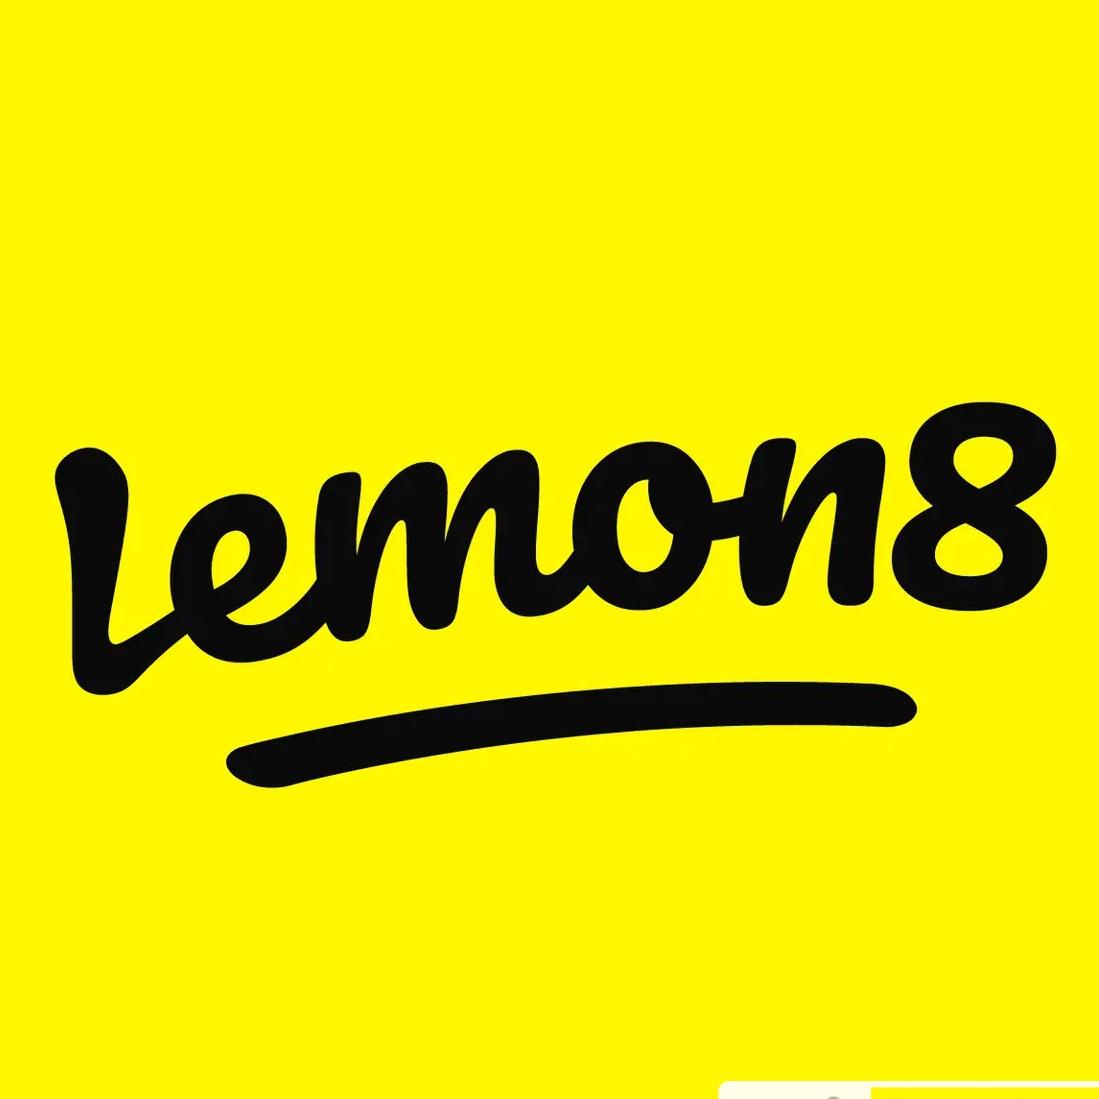 Lemon8 Tutorial's images